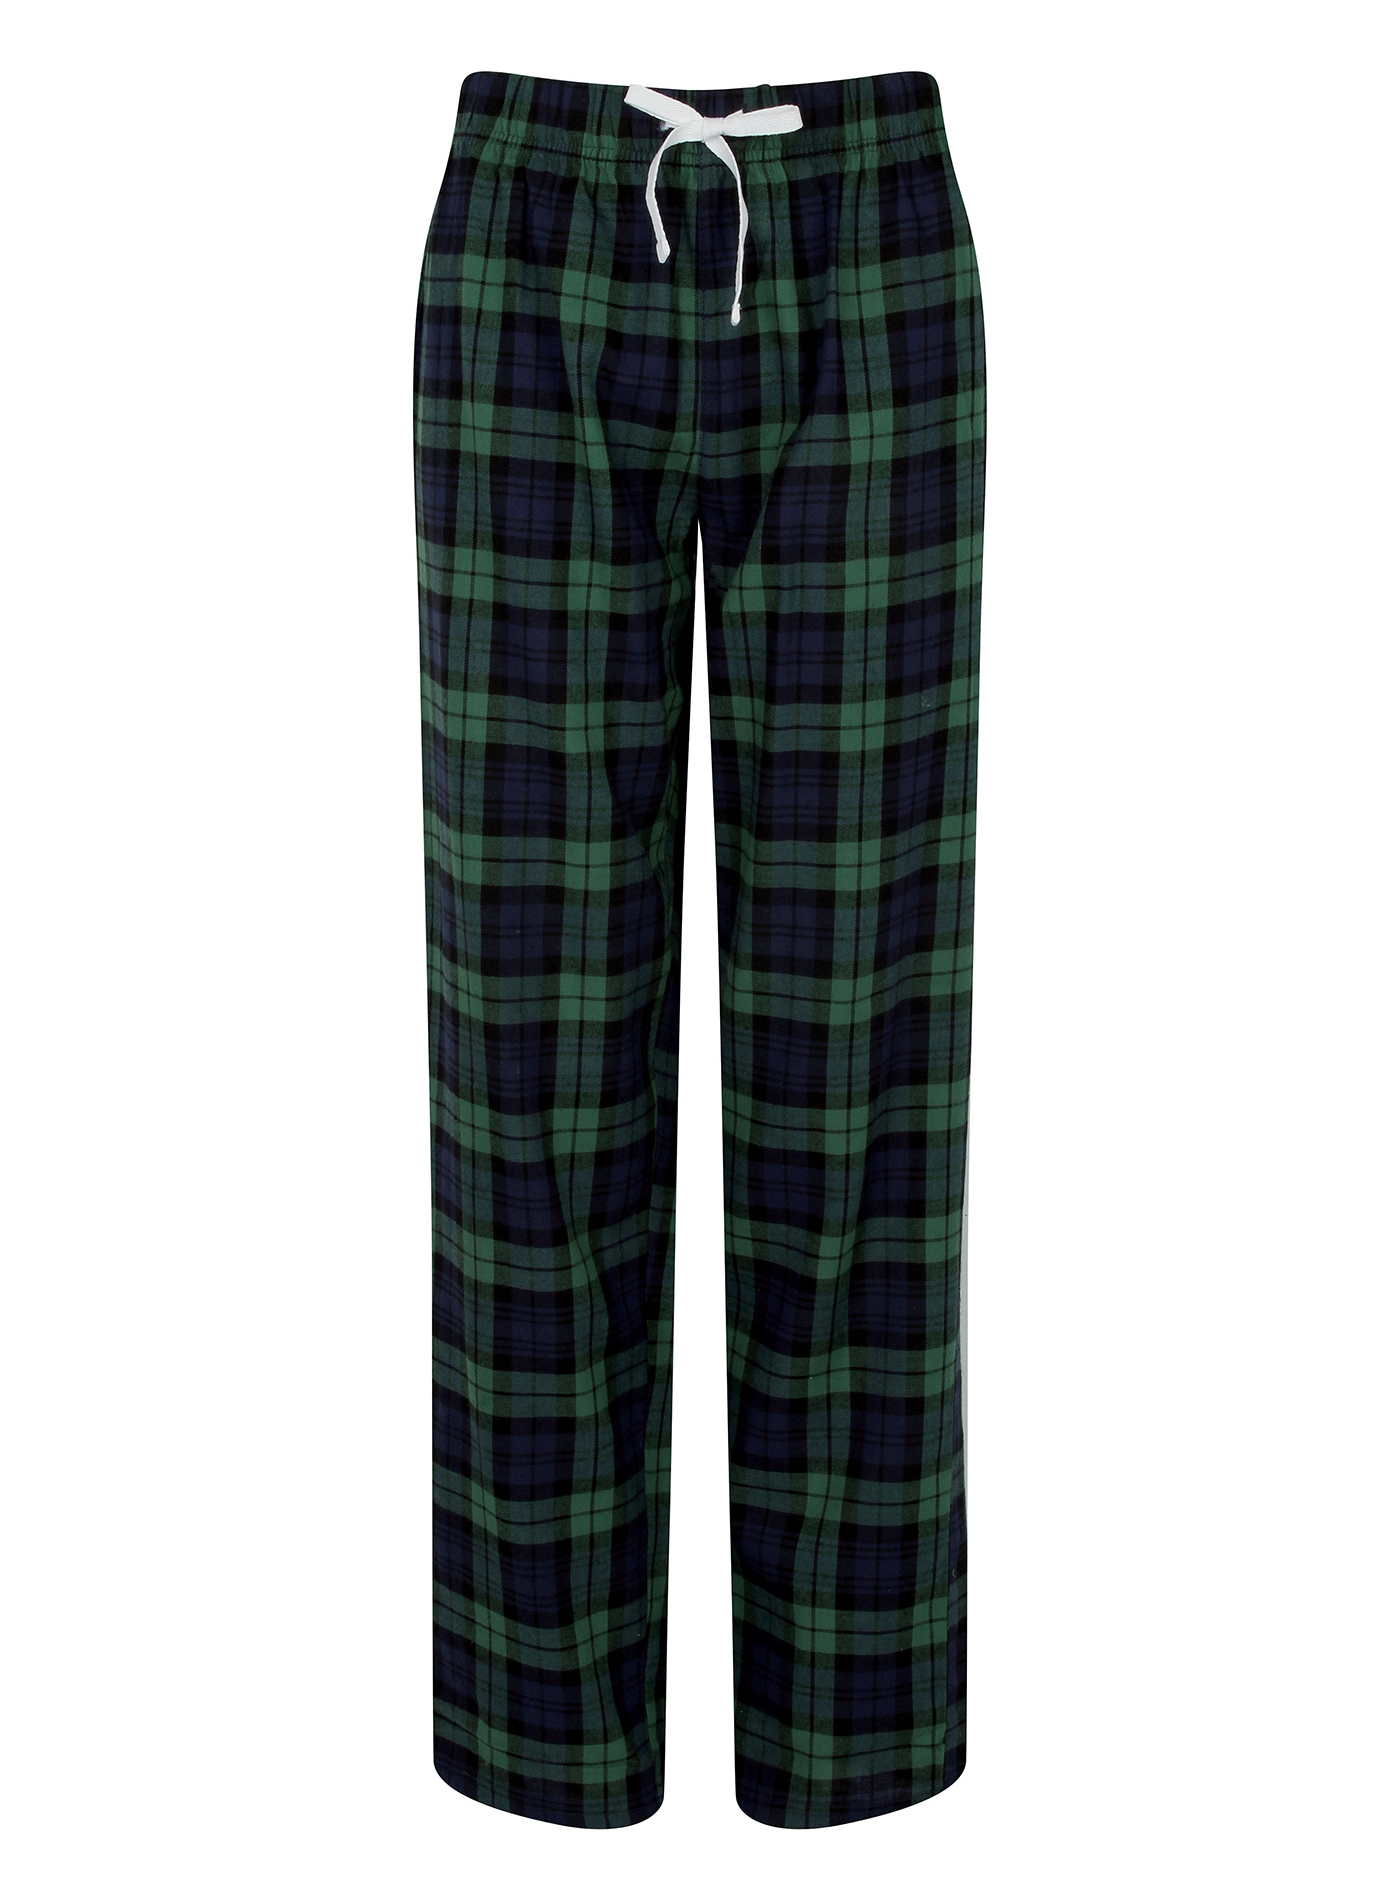 Dámské kalhoty na spaní Skinnifit Tartan - Zelená a modrá XL